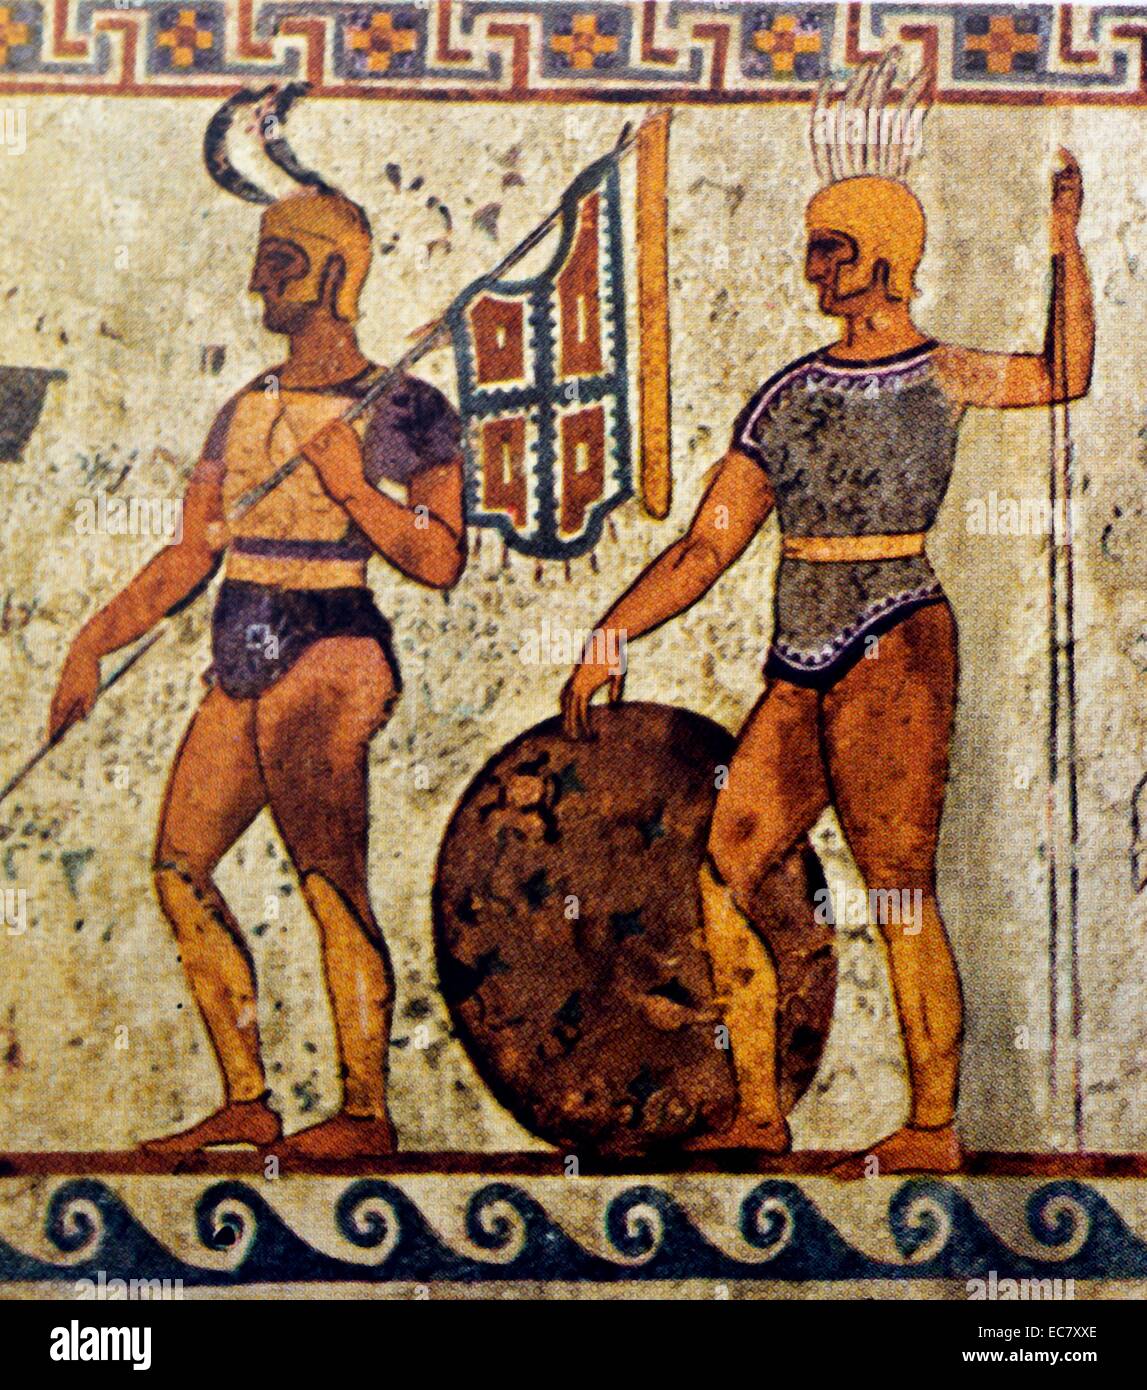 Guerrieri di ritorno dalla battaglia. Dettaglio di un fregio, proveniente da una tomba presso la Porta Aurea, Paestrum, italiote. Seconda metà del IV secolo A.C. Foto Stock